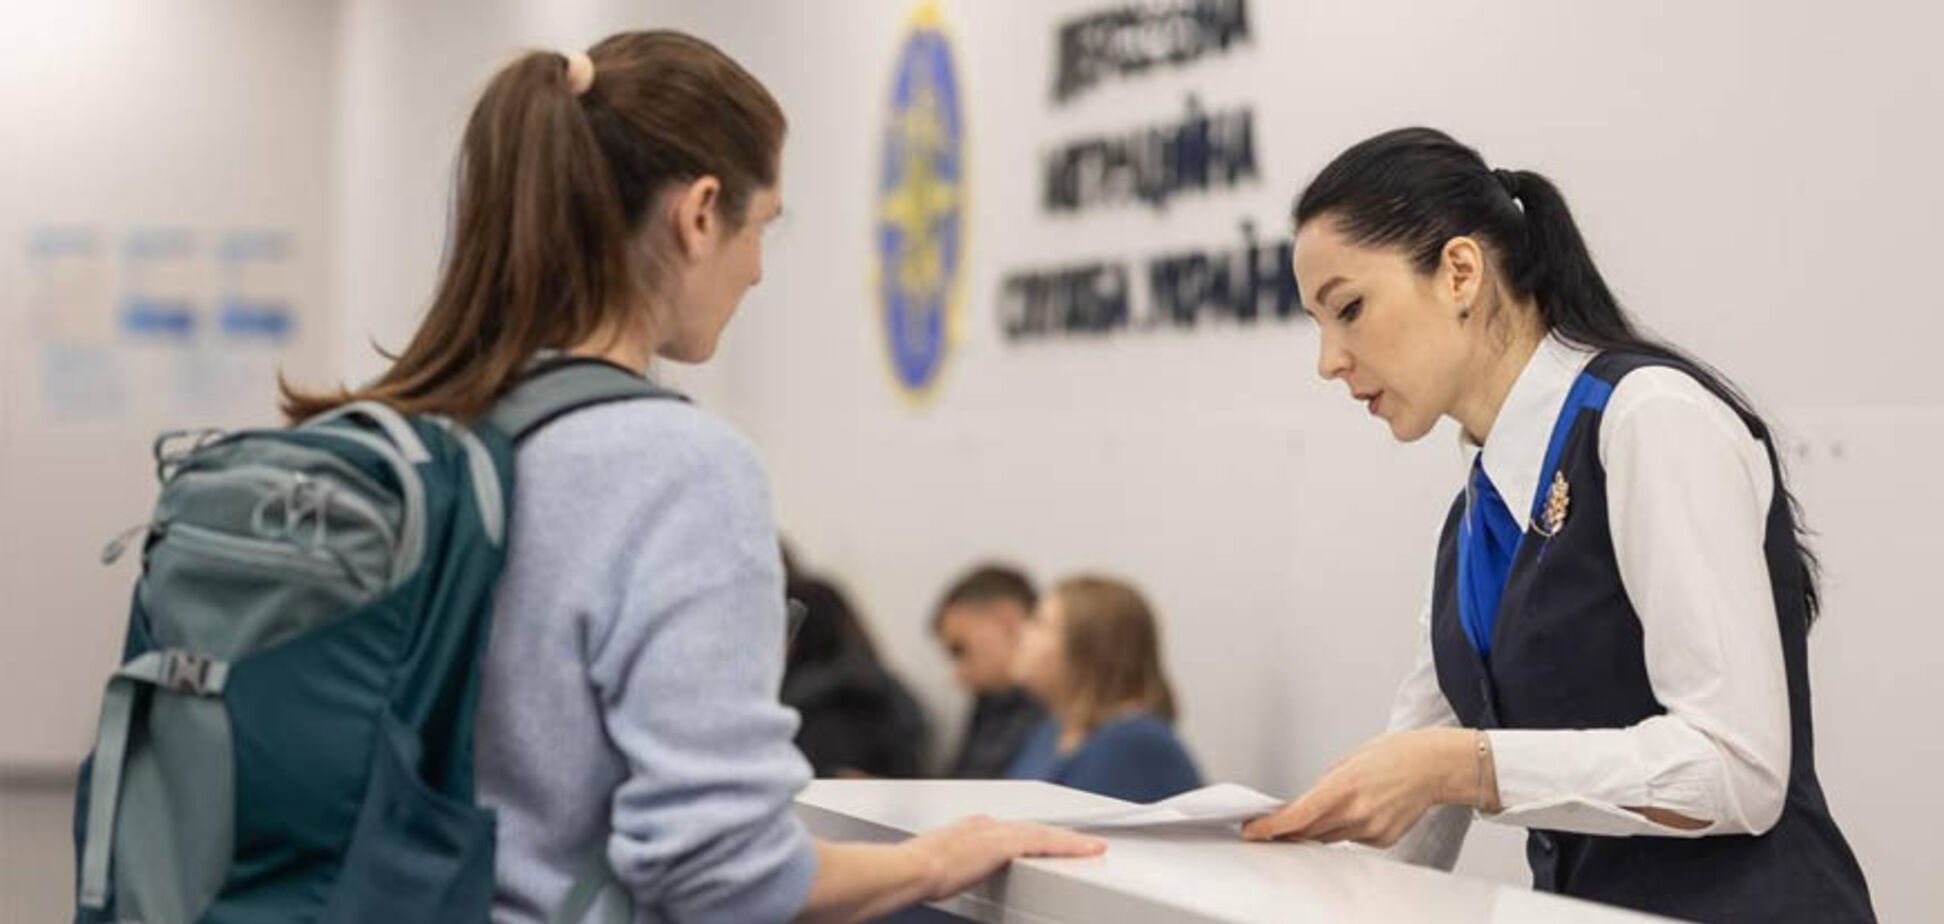 Черг більше не буде: Україна запровадила нову процедуру оформлення паспорта за кордоном